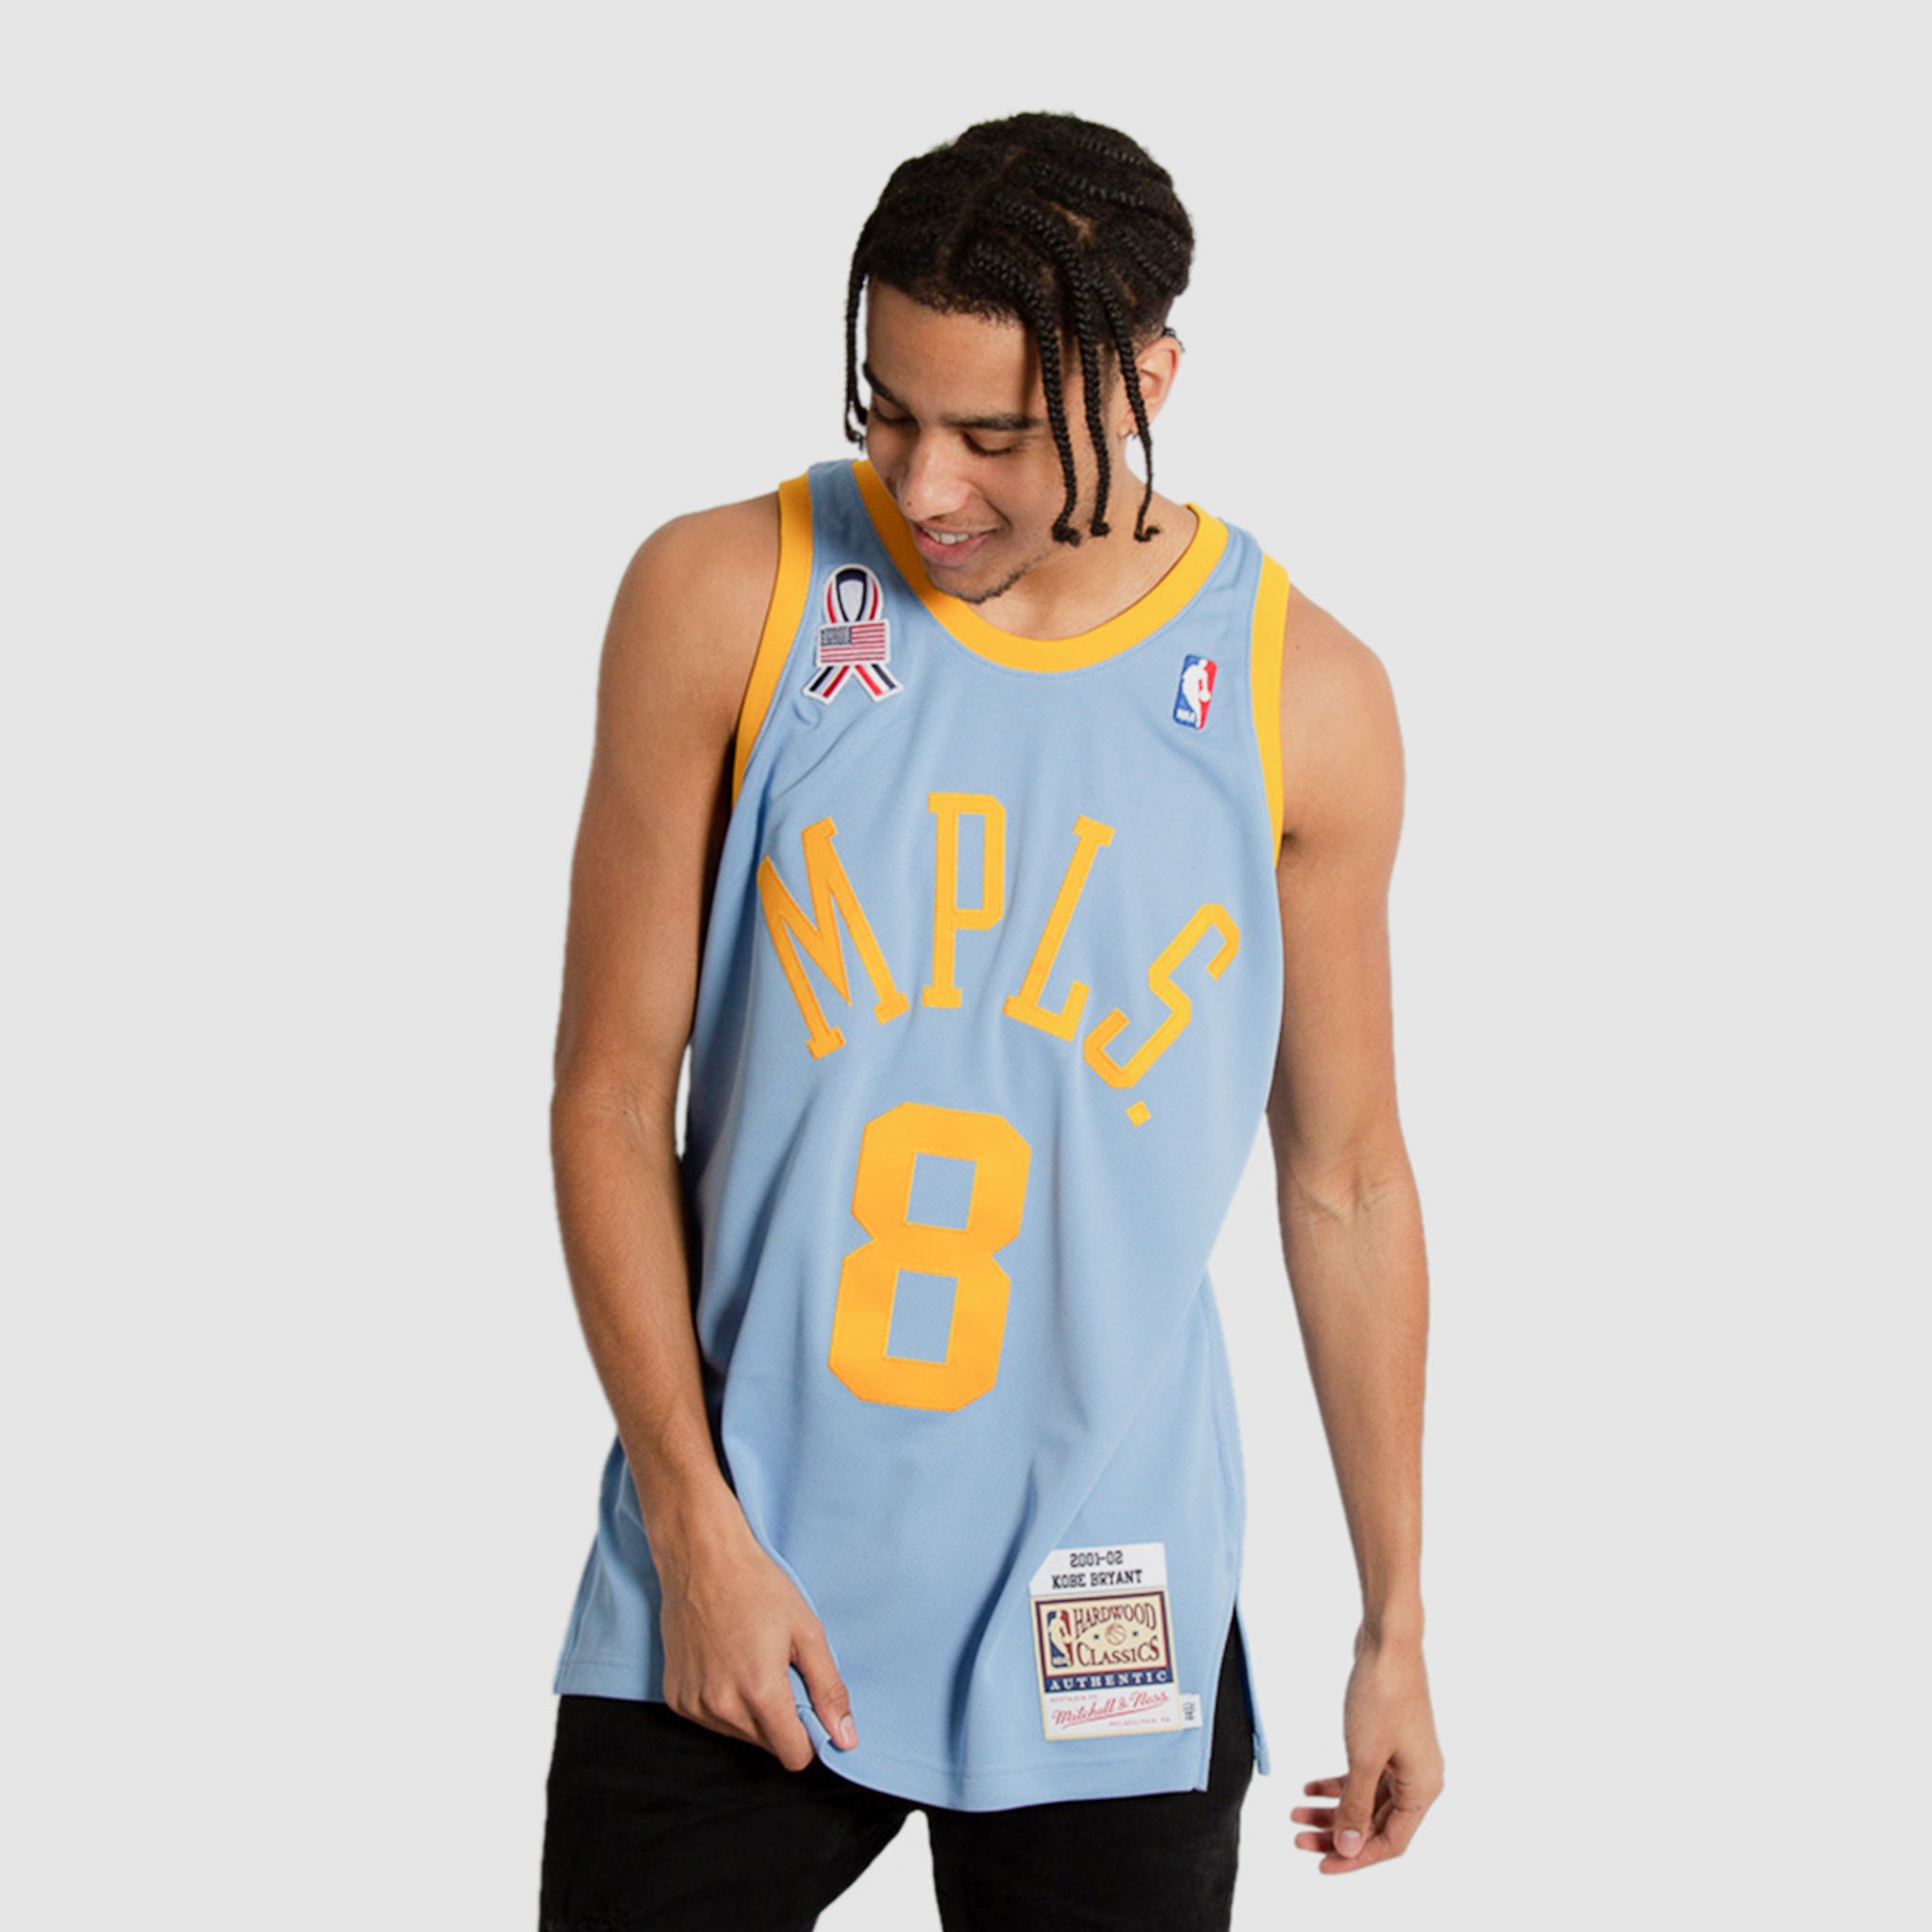 Mitchell & Ness, Shirts, Kobe Bryant Lakers Jersey 3xl